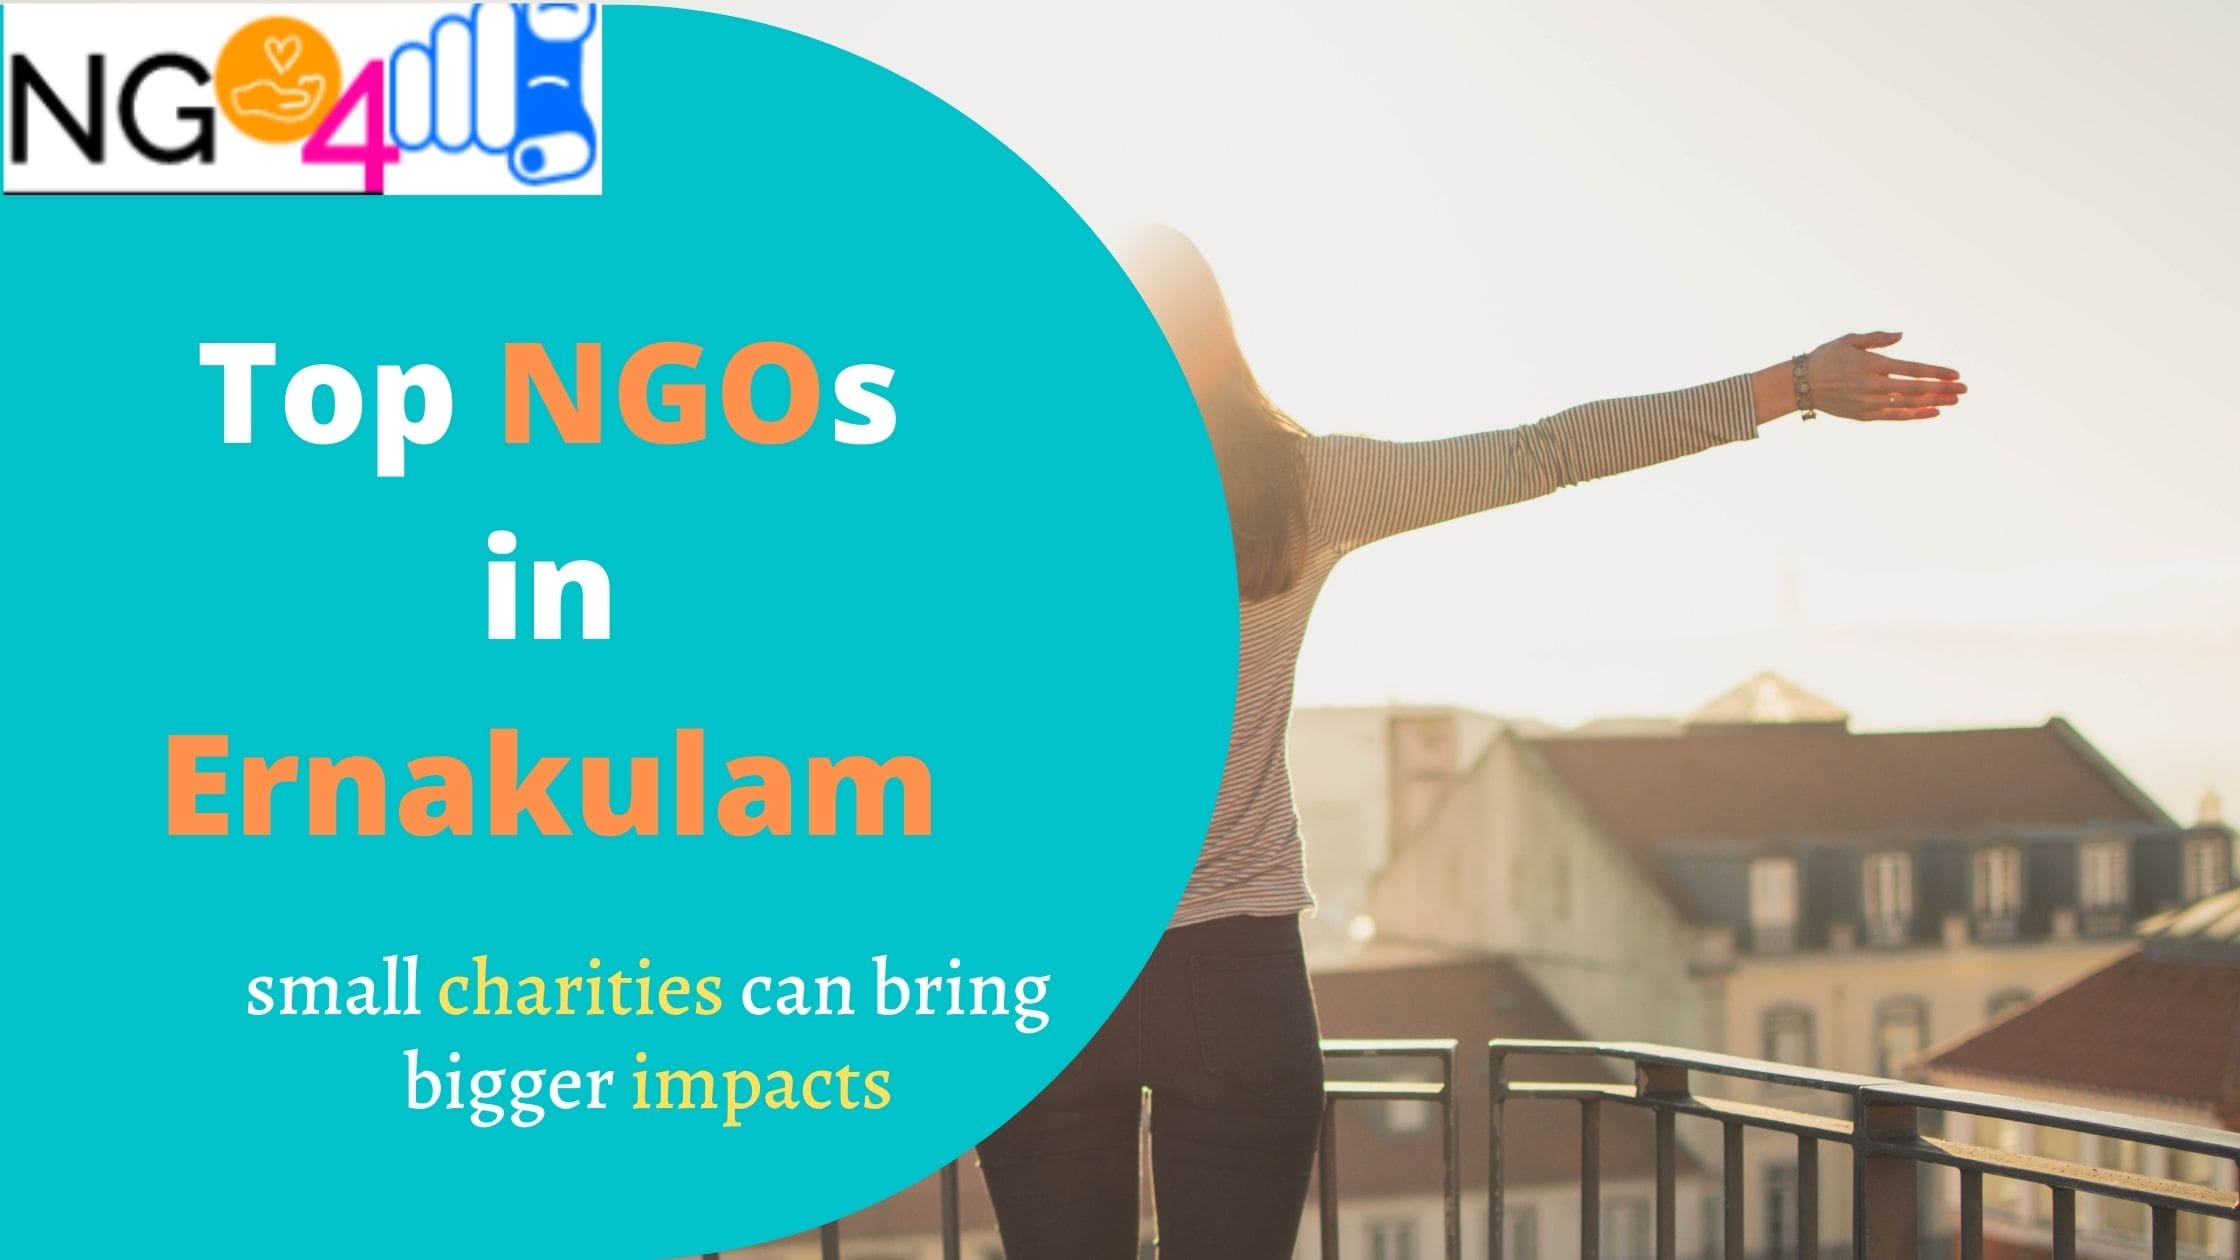 NGOs in Ernakulam